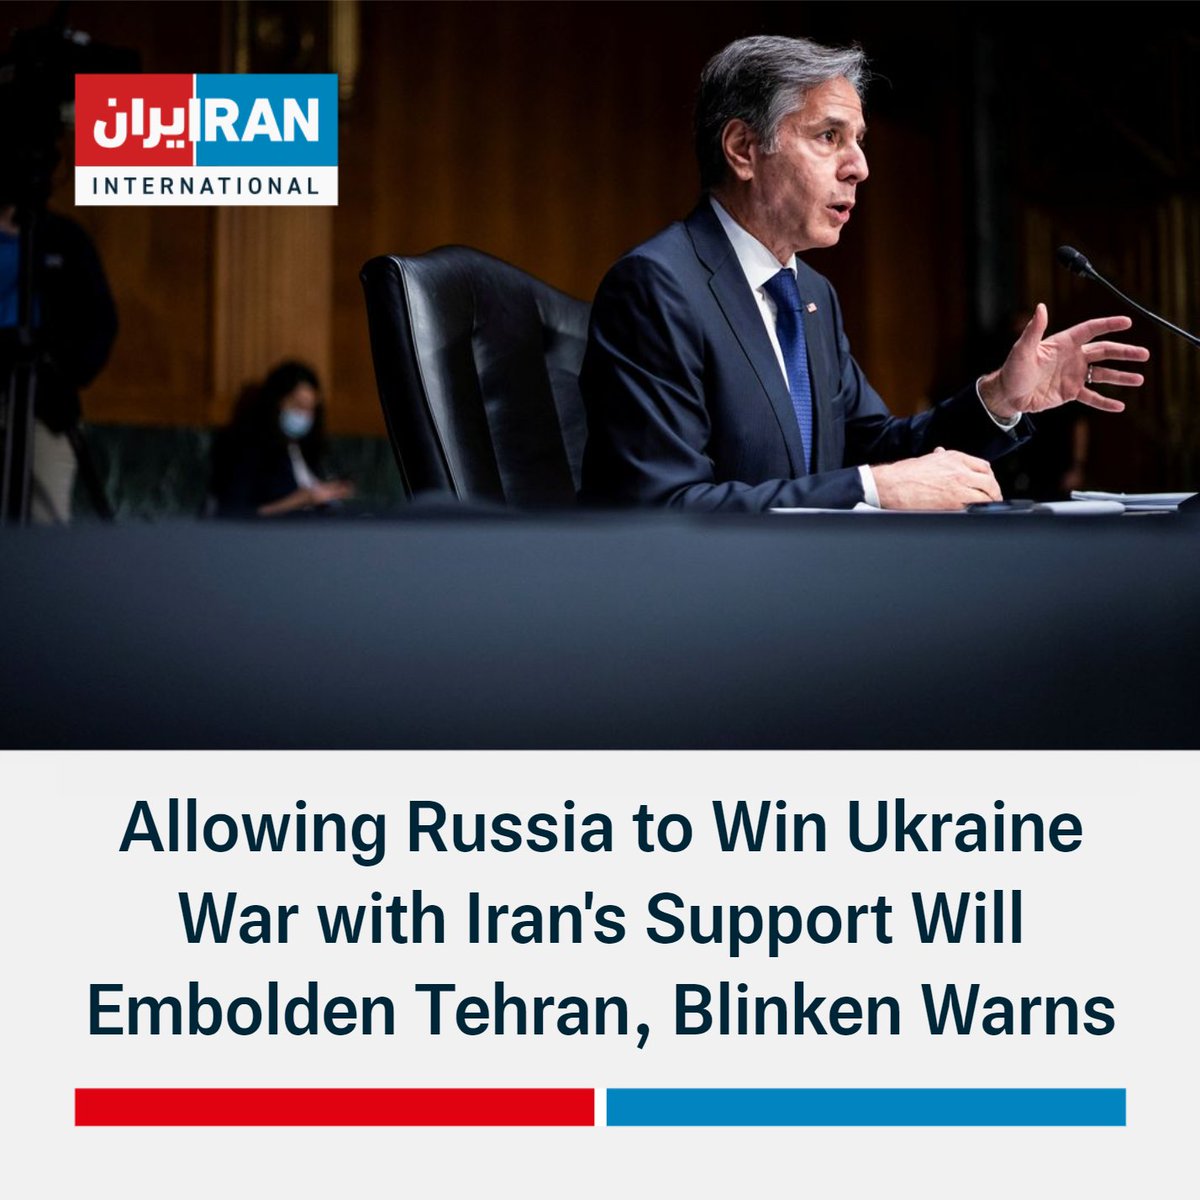 ABD Dışişleri Bakanı @SecBlinken Senato duruşmasında: Rusya'nın geleneksel ordusunu tedarik etme yollarını kestiğimizden beri, yardım için giderek daha fazla İran'a yöneldi. Buna karşılık Moskova İran'a giderek daha gelişmiş askeri teknoloji sağladı